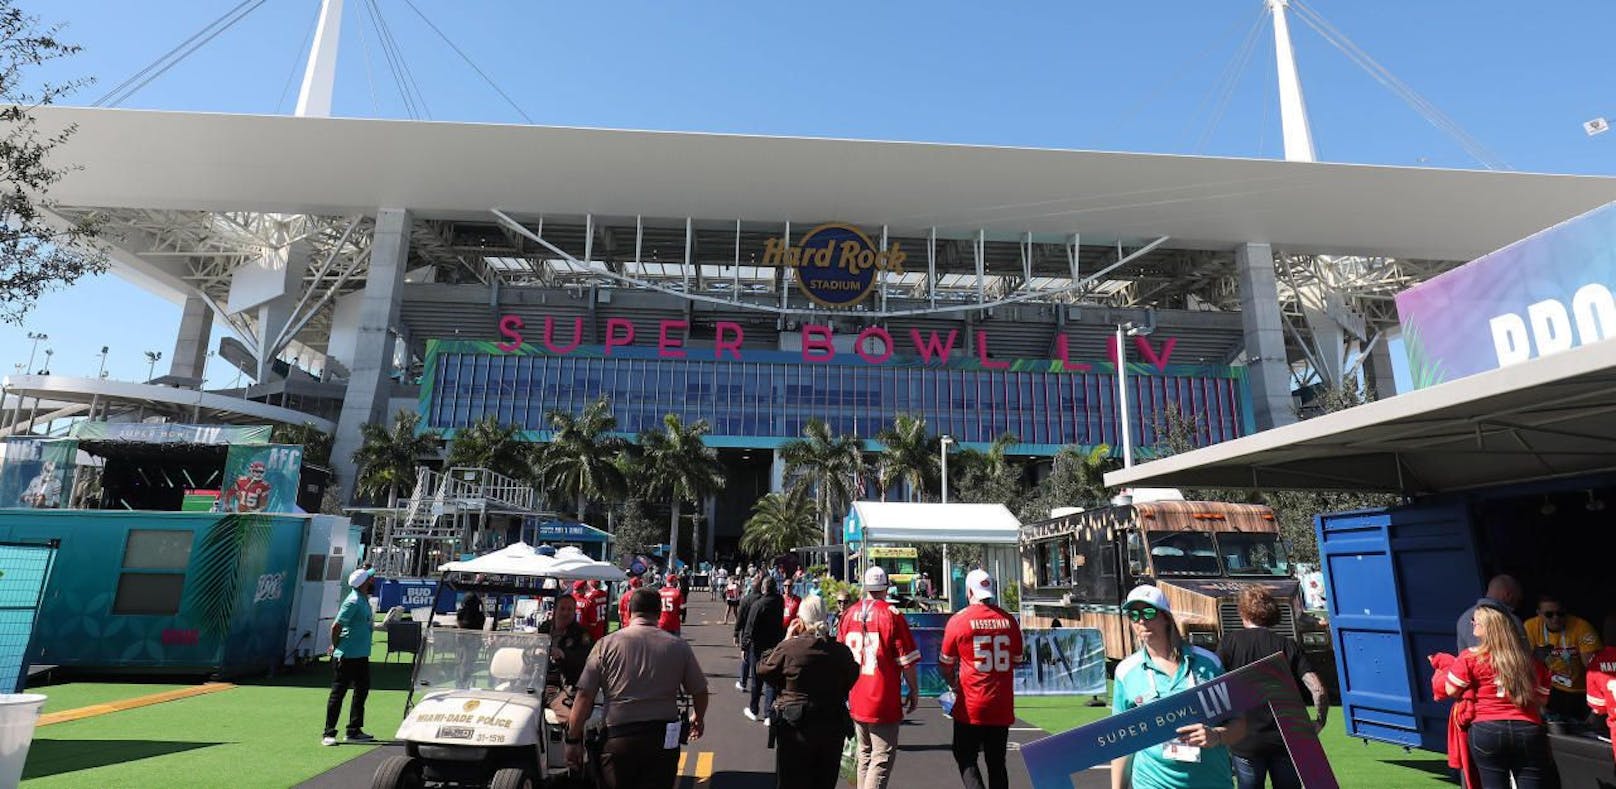 Das Hard Rock Stadium in Miami ist kein billiges Vergnügen